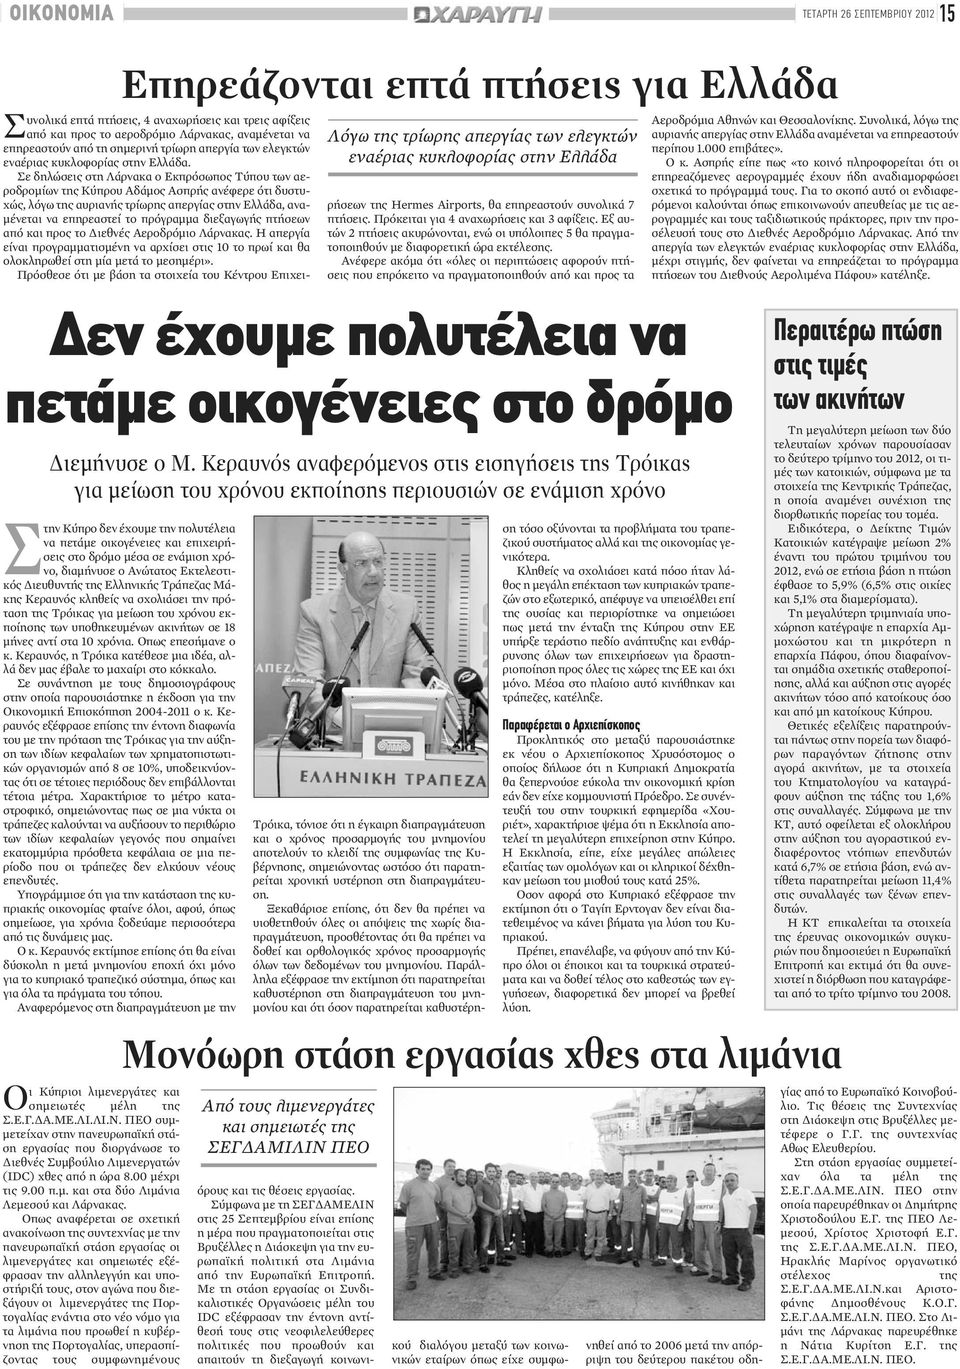 Σε δηλώσεις στη Λάρνακα ο Εκπρόσωπος Τύπου των αεροδρομίων της Κύπρου Αδάμος Ασπρής ανέφερε ότι δυστυχώς, λόγω της αυριανής τρίωρης απεργίας στην Ελλάδα, αναμένεται να επηρεαστεί το πρόγραμμα